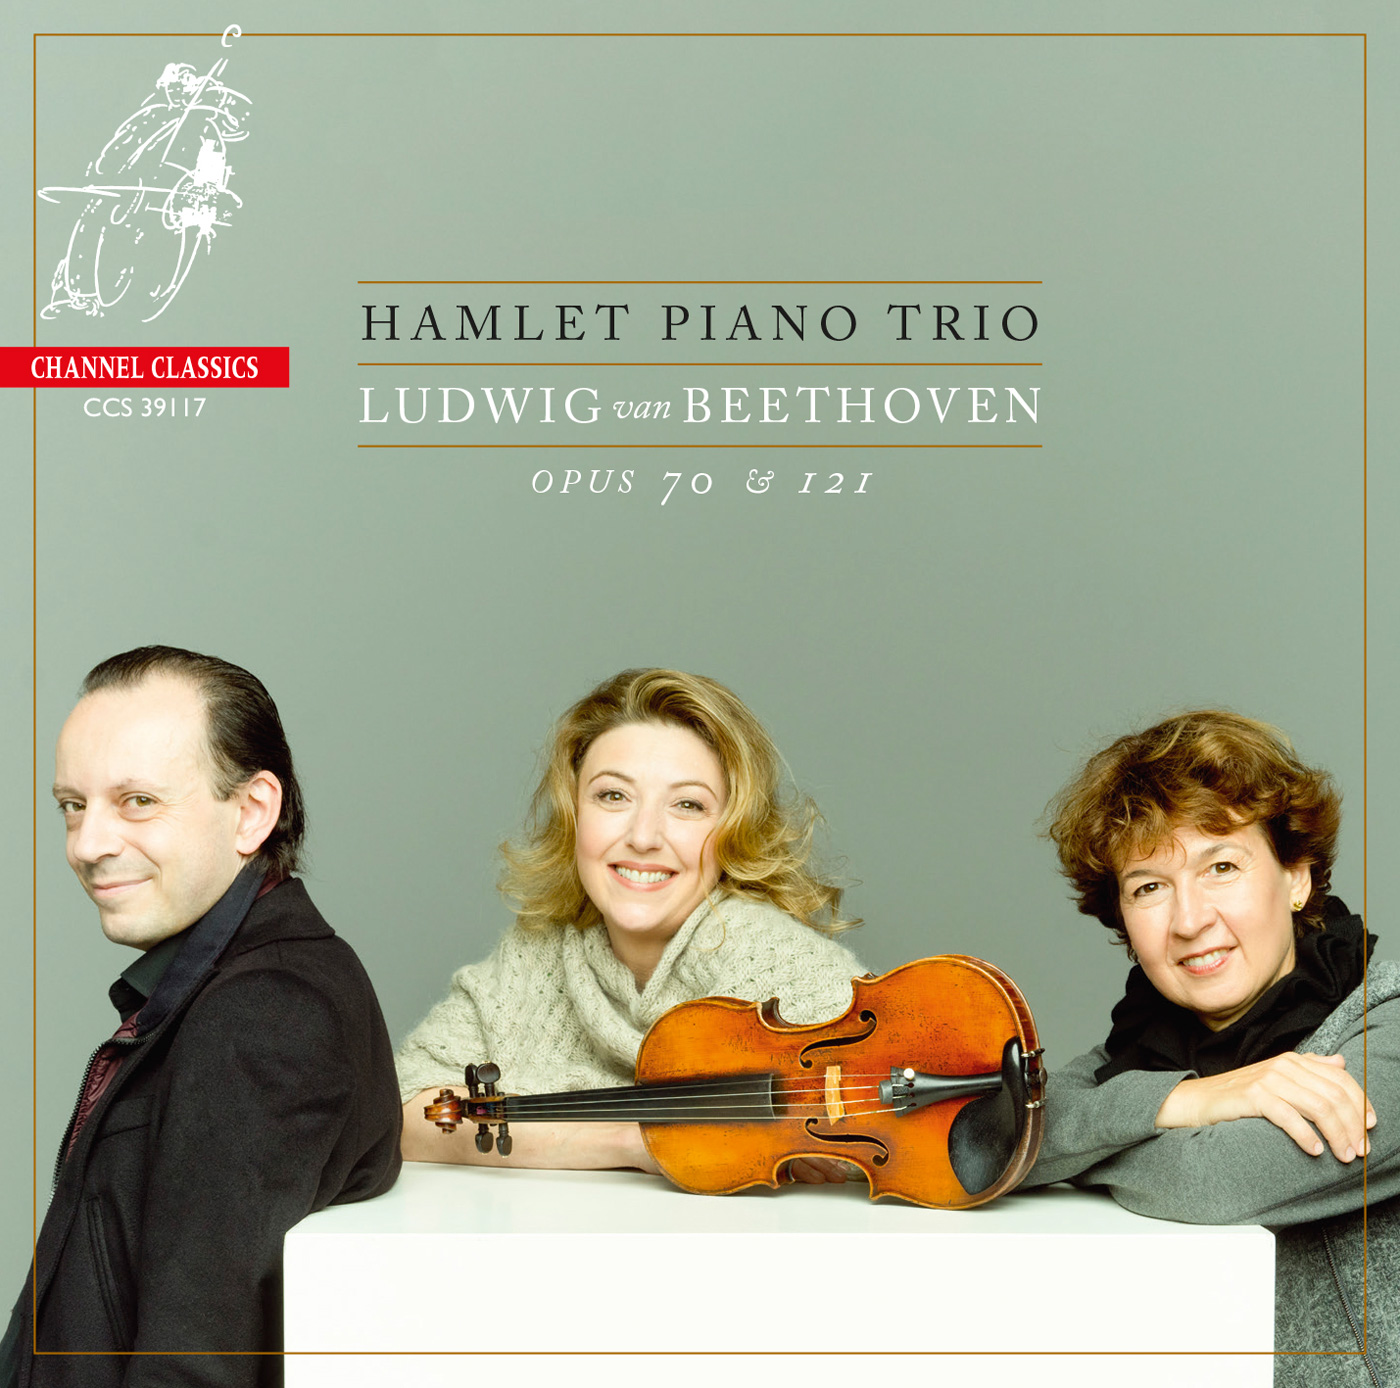 Hamlet Piano Trio – Beethoven: Opus 70 & 121